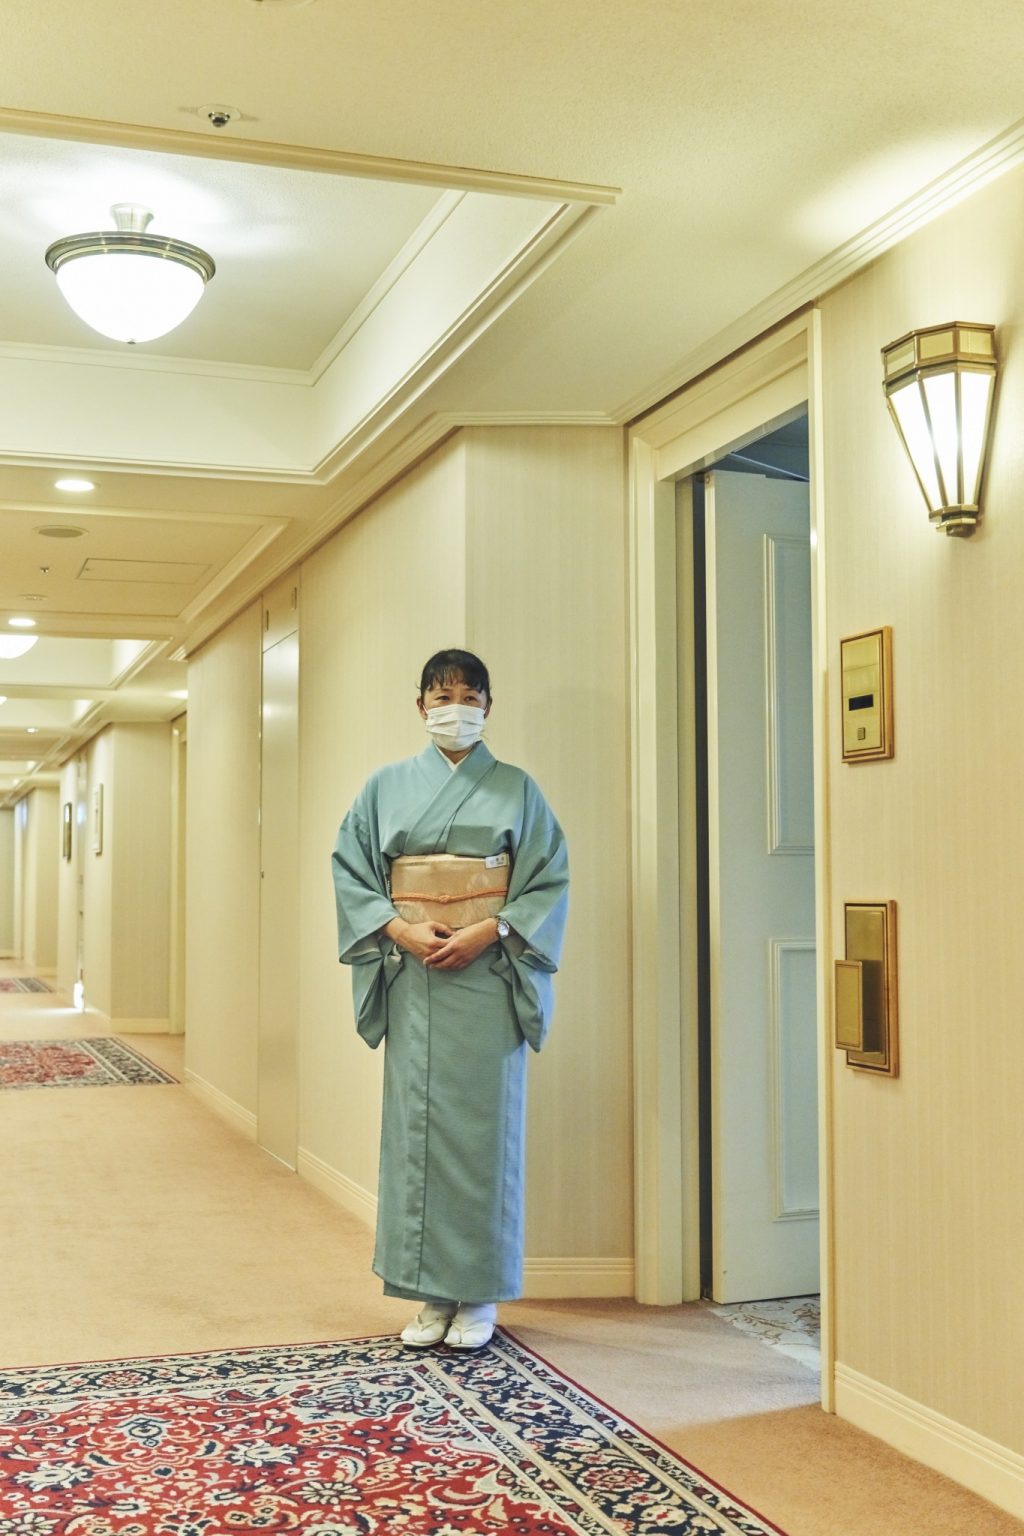 インペリアルフロアの宿泊者を担当するゲストアテンダント。ウェルカムドリンクや客室の説明、荷ほどきなど手厚いケアをしてくれる。この着物姿こそ、日本の迎賓館として開業し、世界中のVIPをお迎えしてきたホテルの伝統と誇りなのだ。